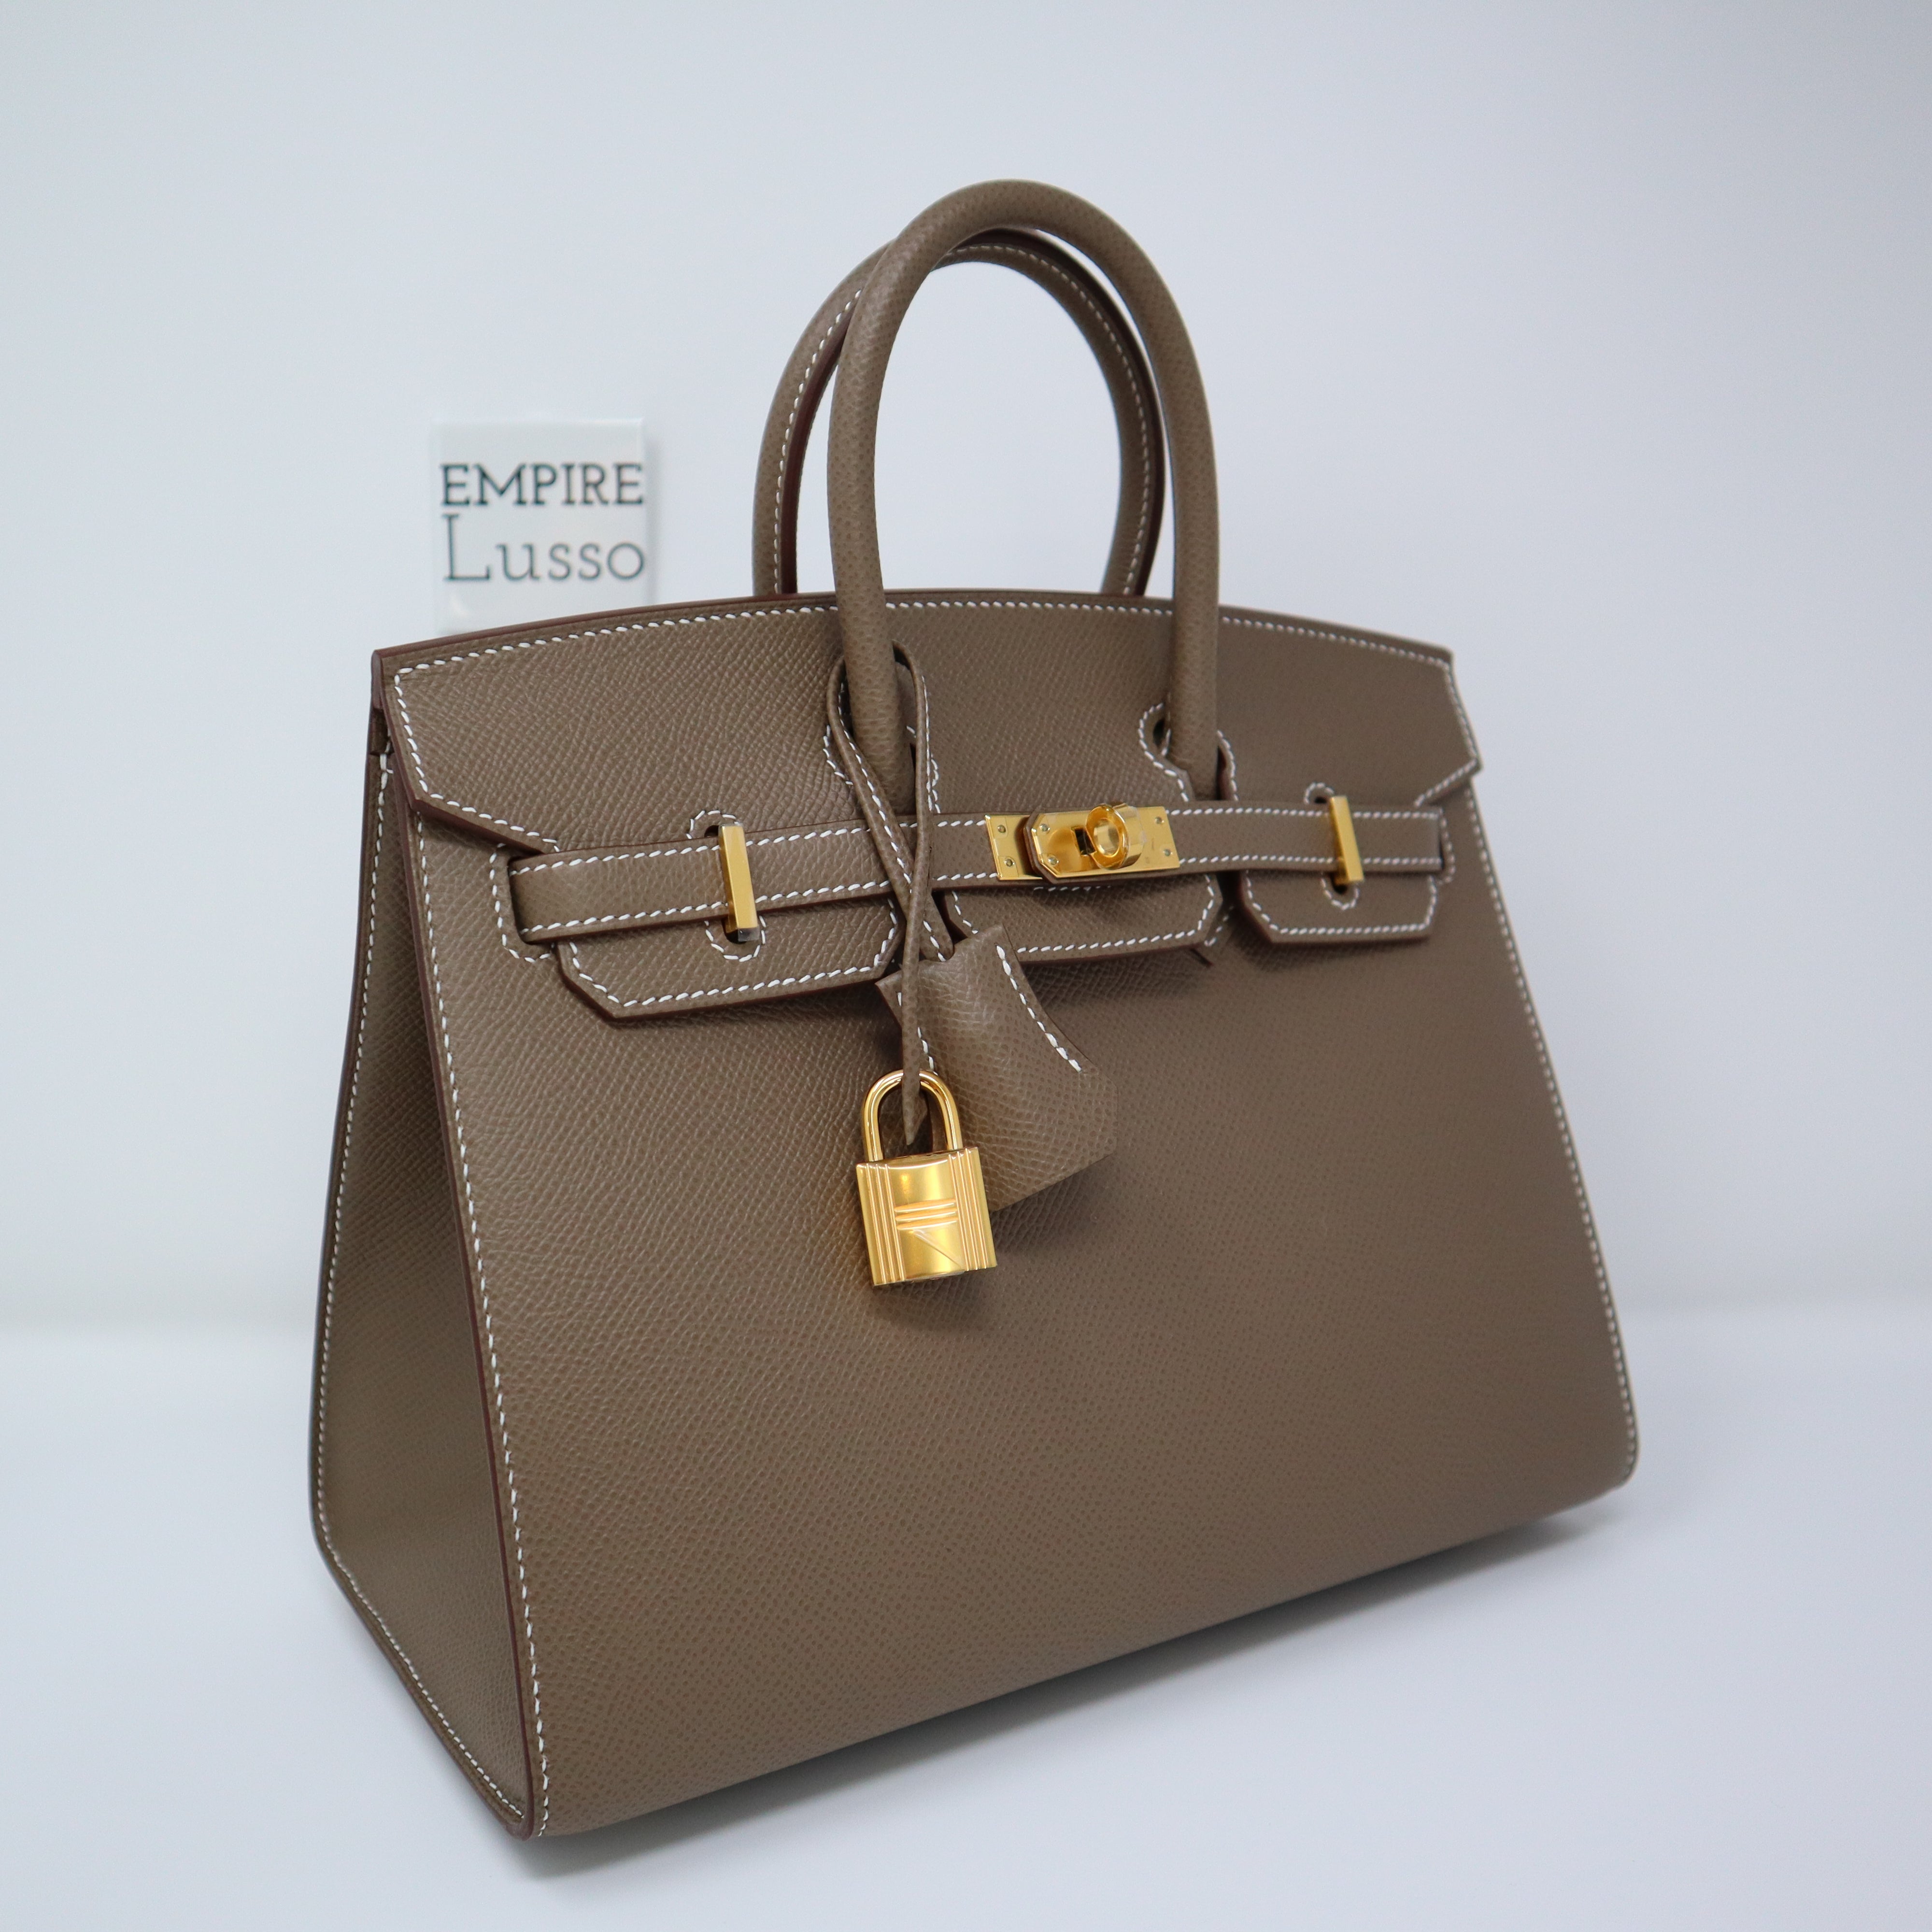 Hermes Birkin 25 cm handbag in grey epsom leather